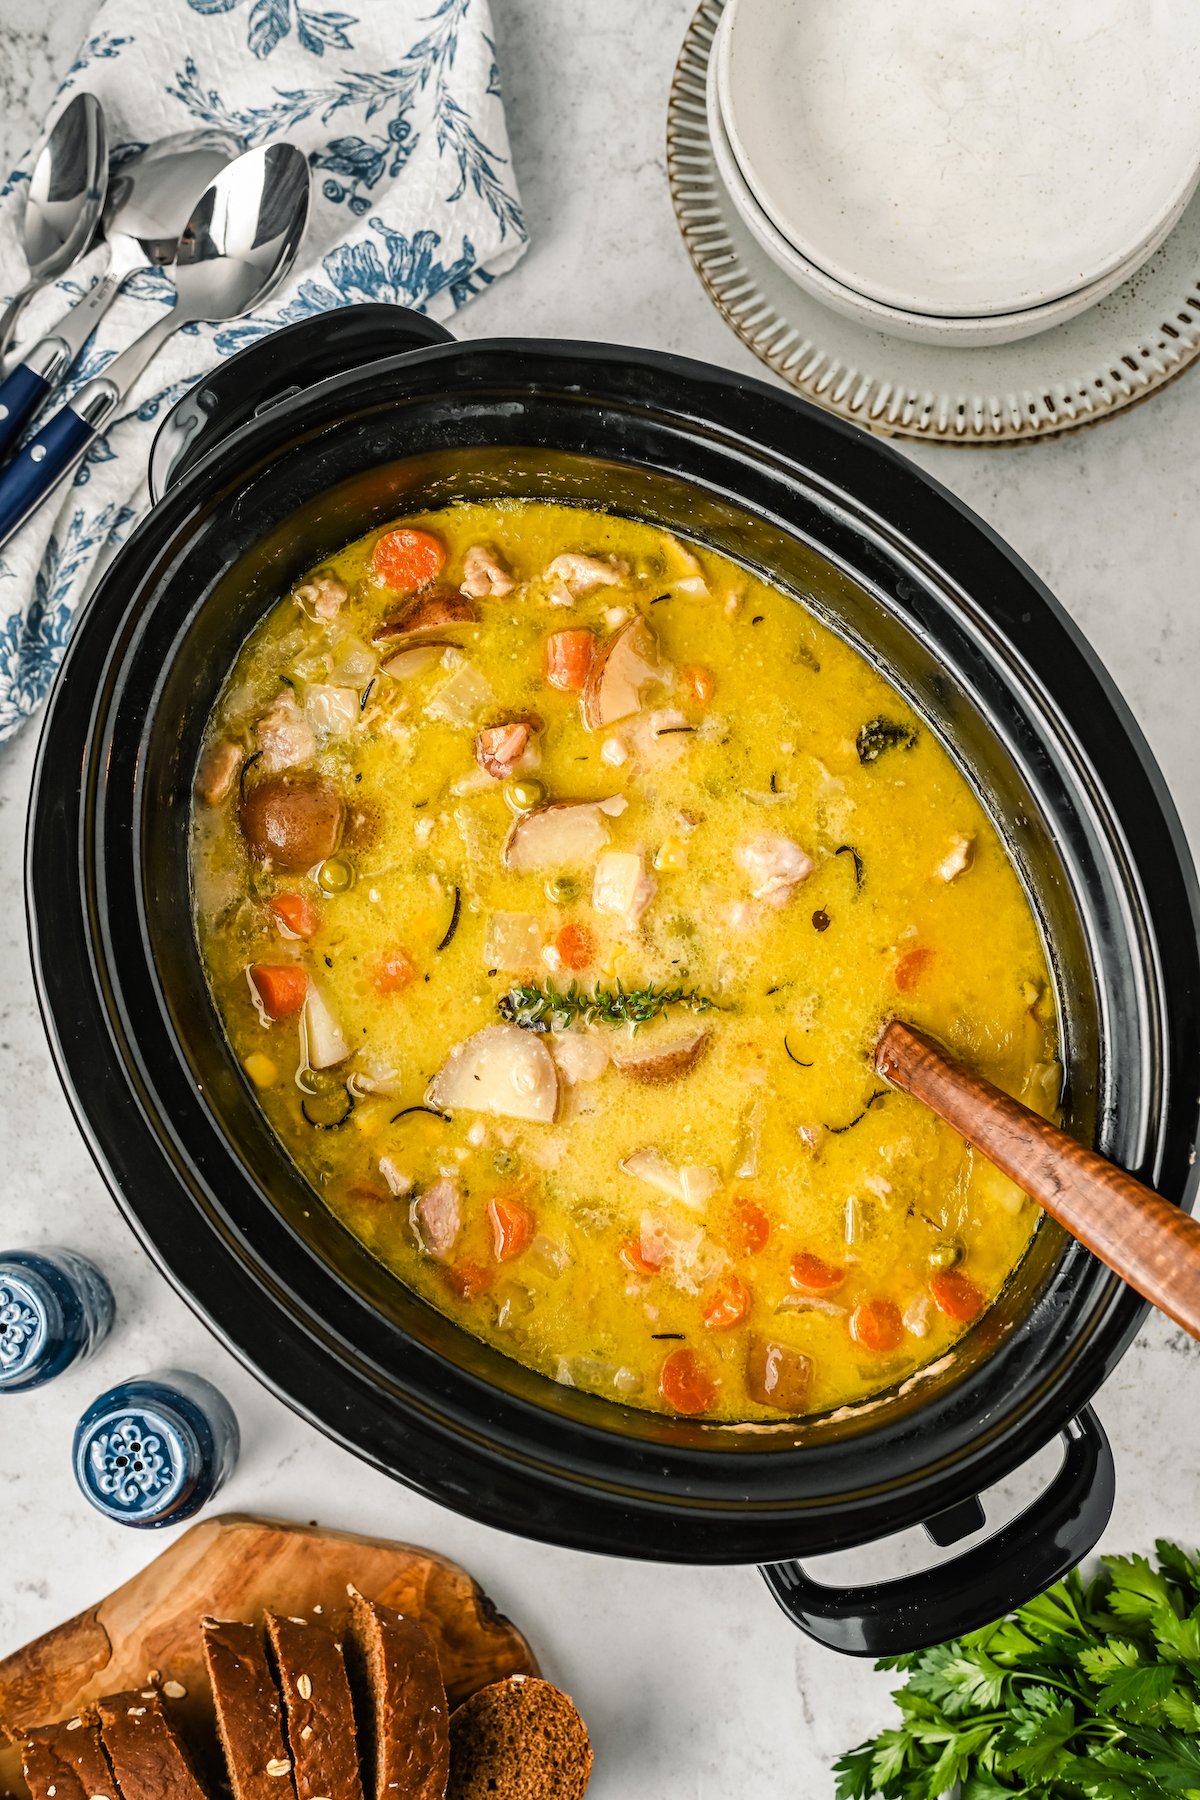 Chicken stew in a crockpot.